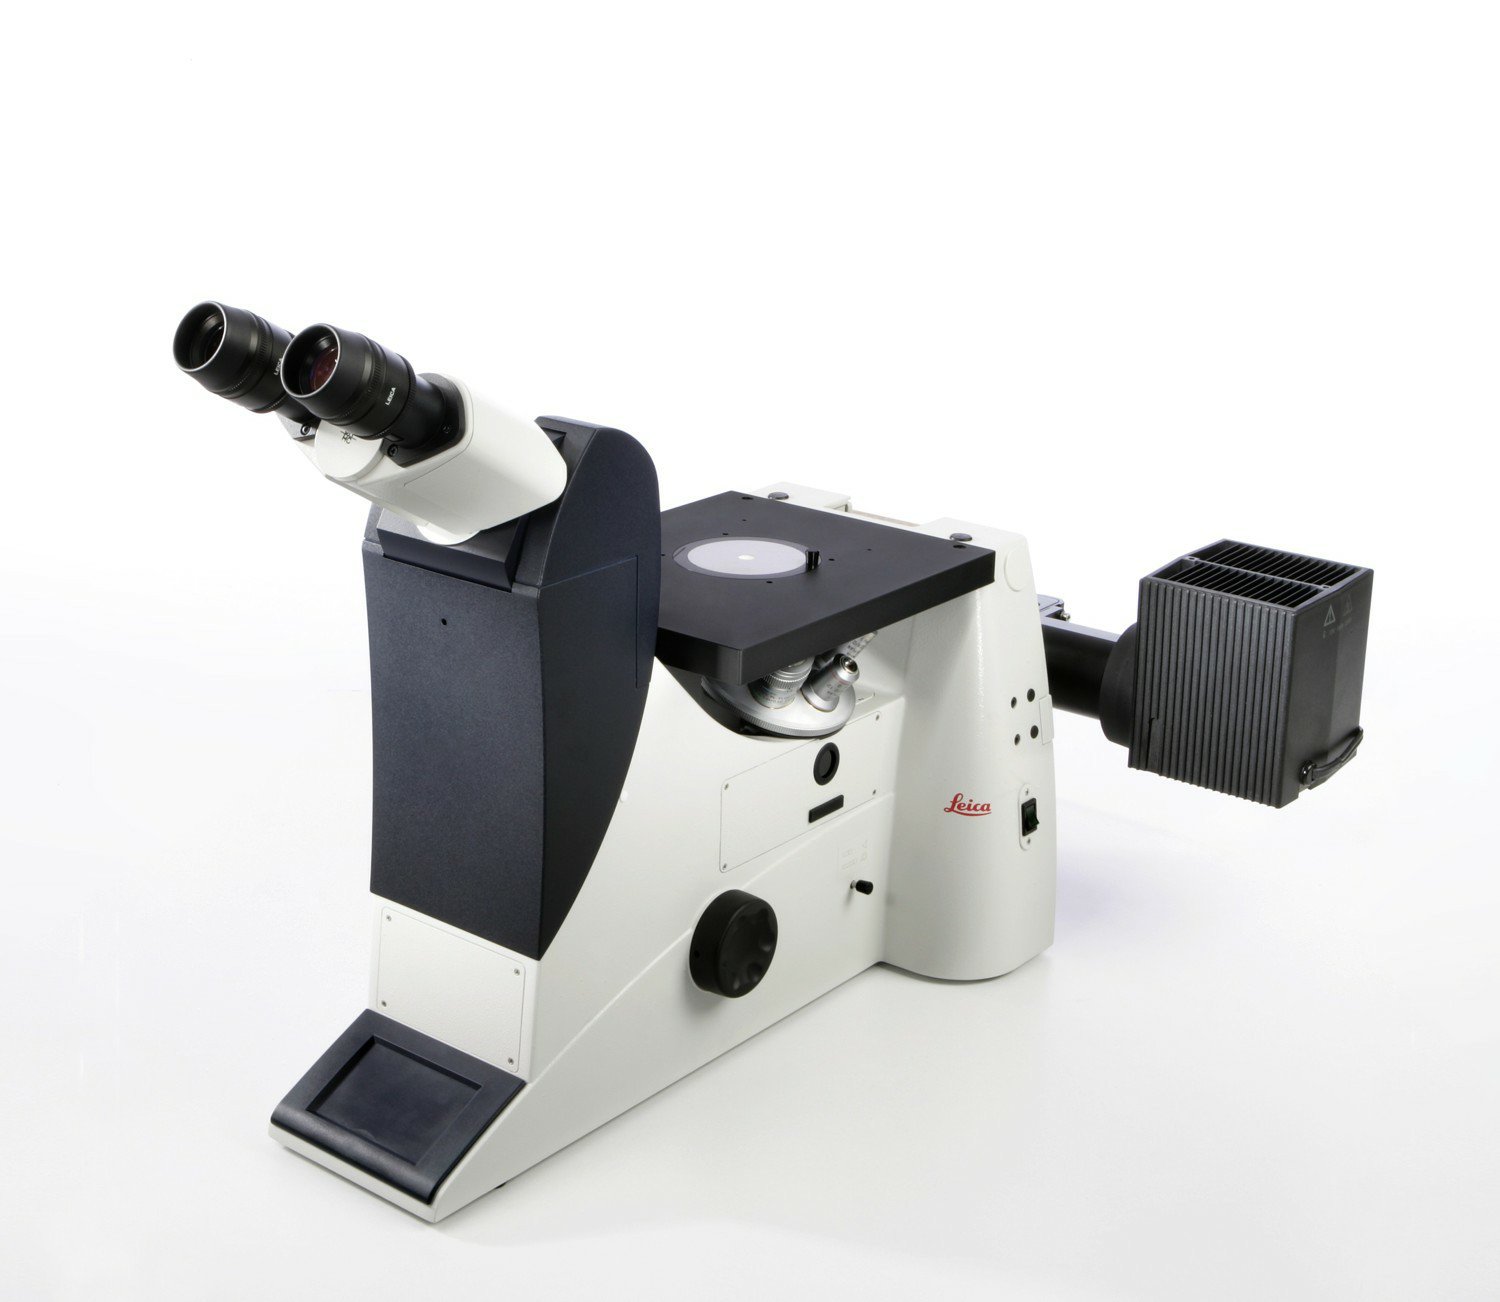 纯手动的倒置研究级的工业应用显微镜  Leica DMI3000 M